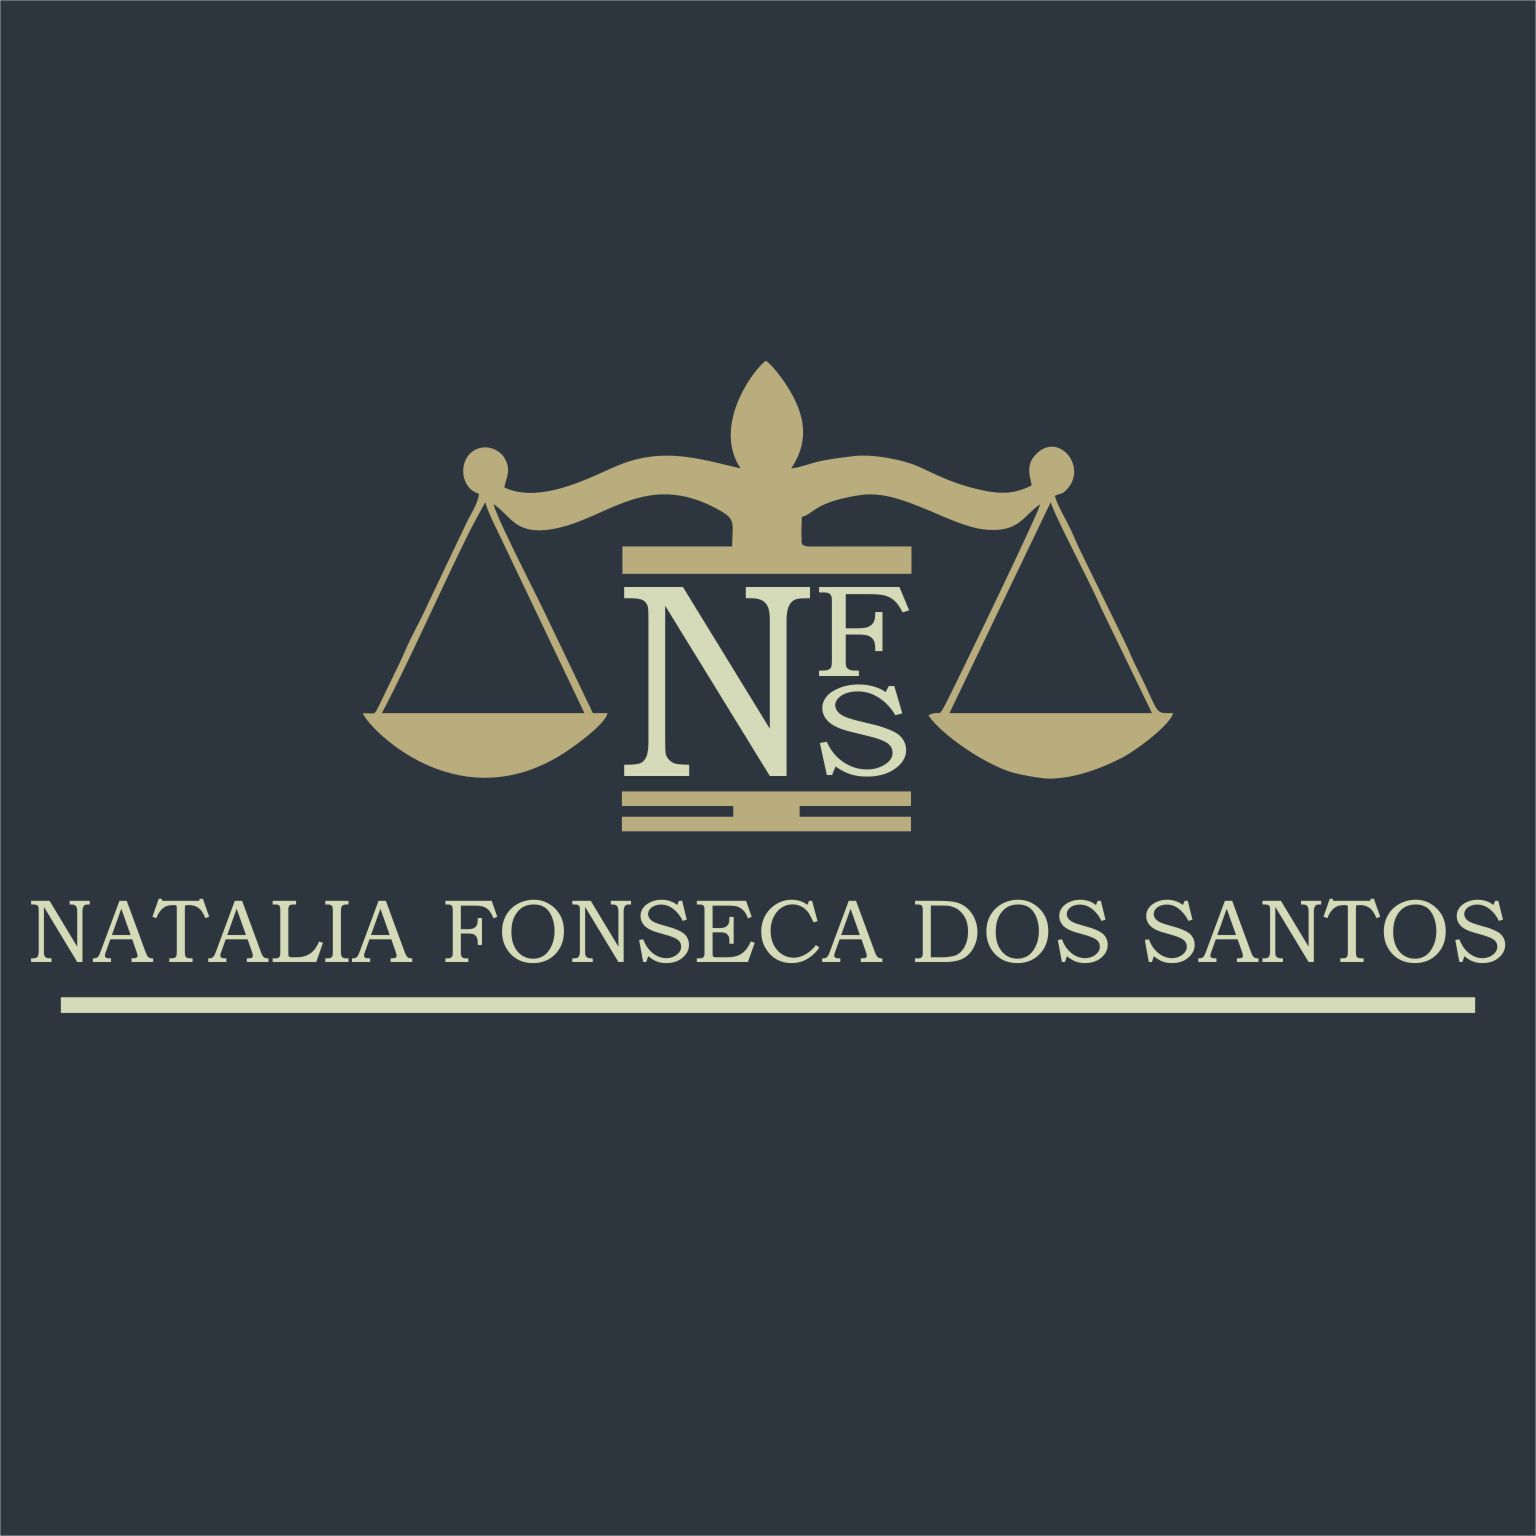 Natália Fonseca dos Santos